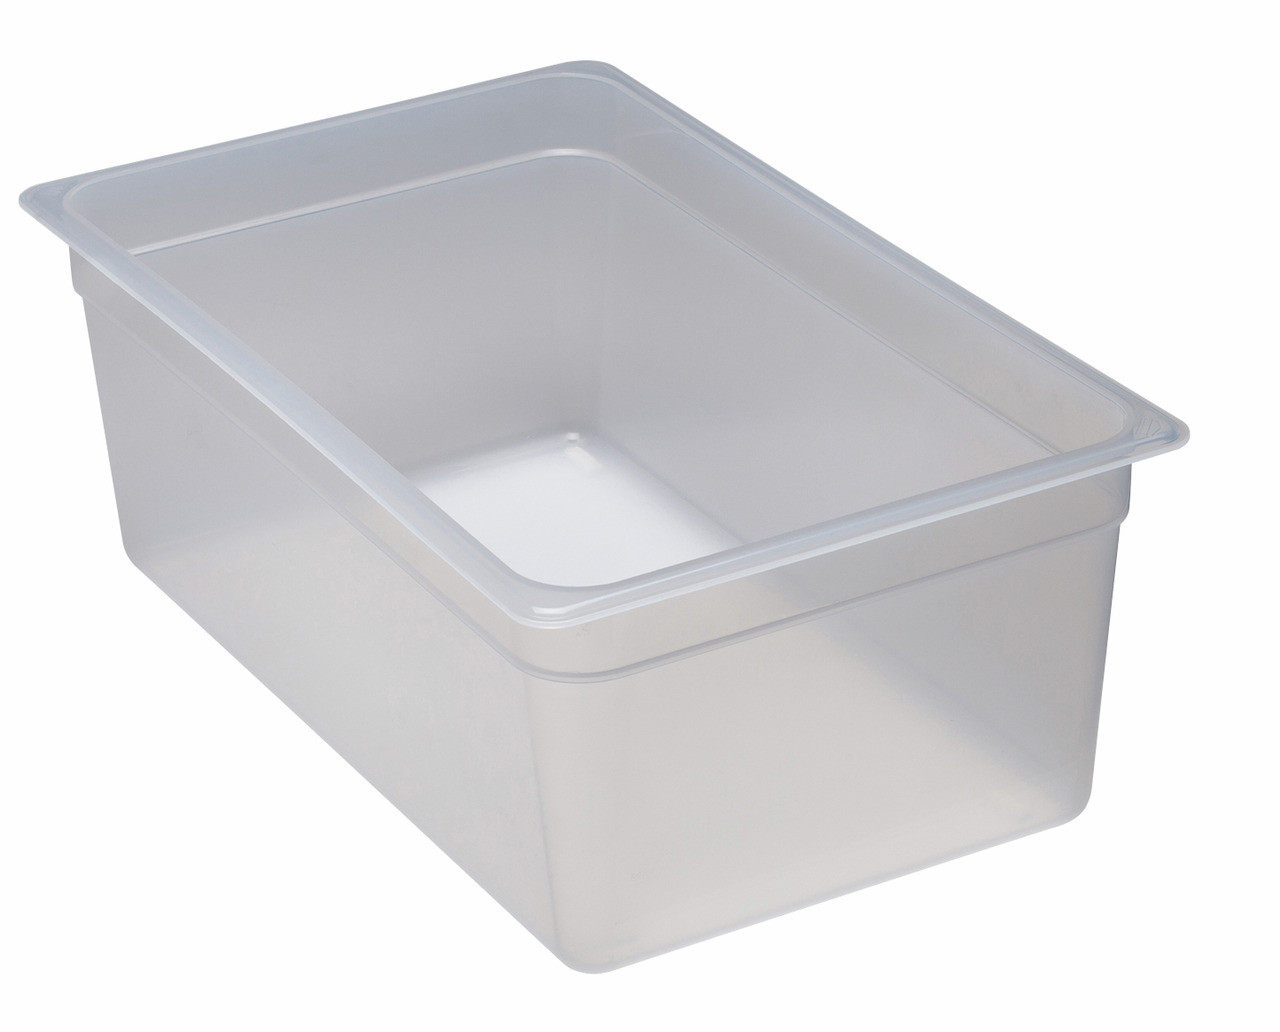 Frischhaltebox, GN 1/1, 530 x 325 x 200 mm, Polypropylen transparent